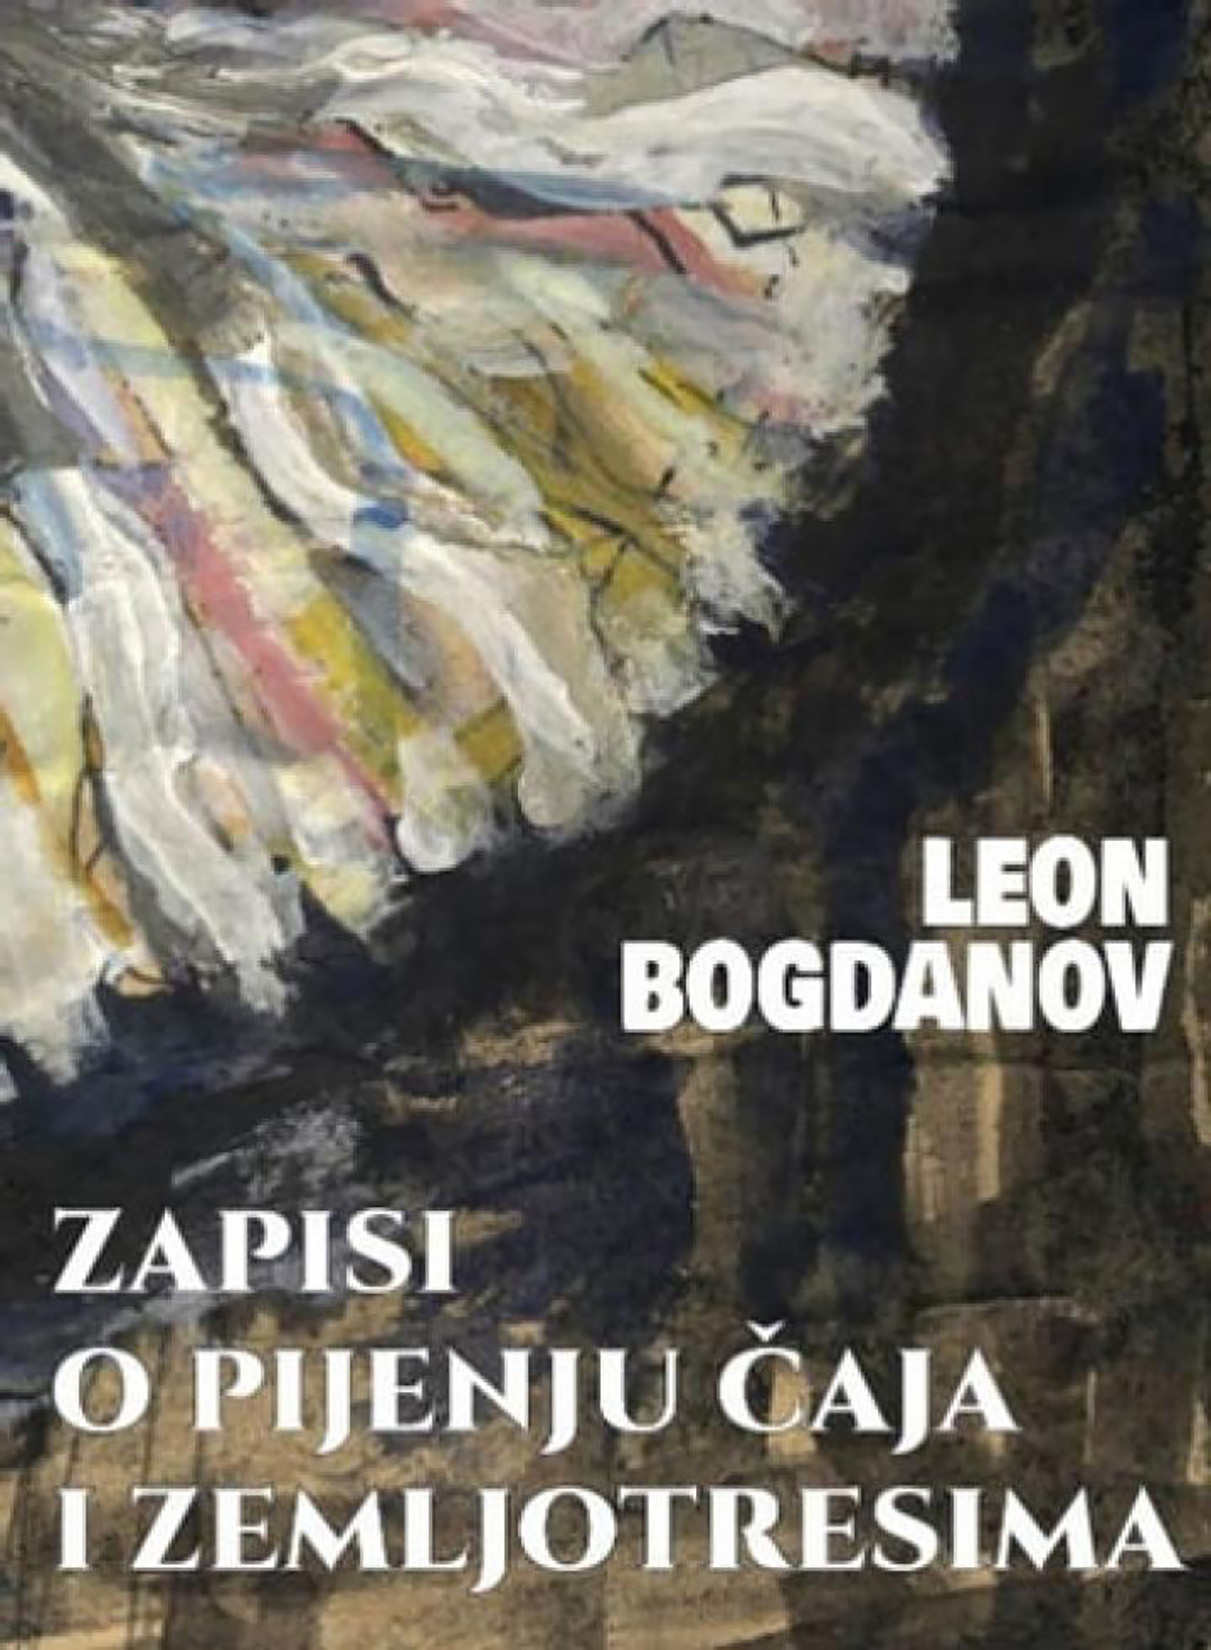 Leon Bogdanov, Zapisi o pijenju čaja i zemljotresima, knjiga, korice, predlog za čitanje